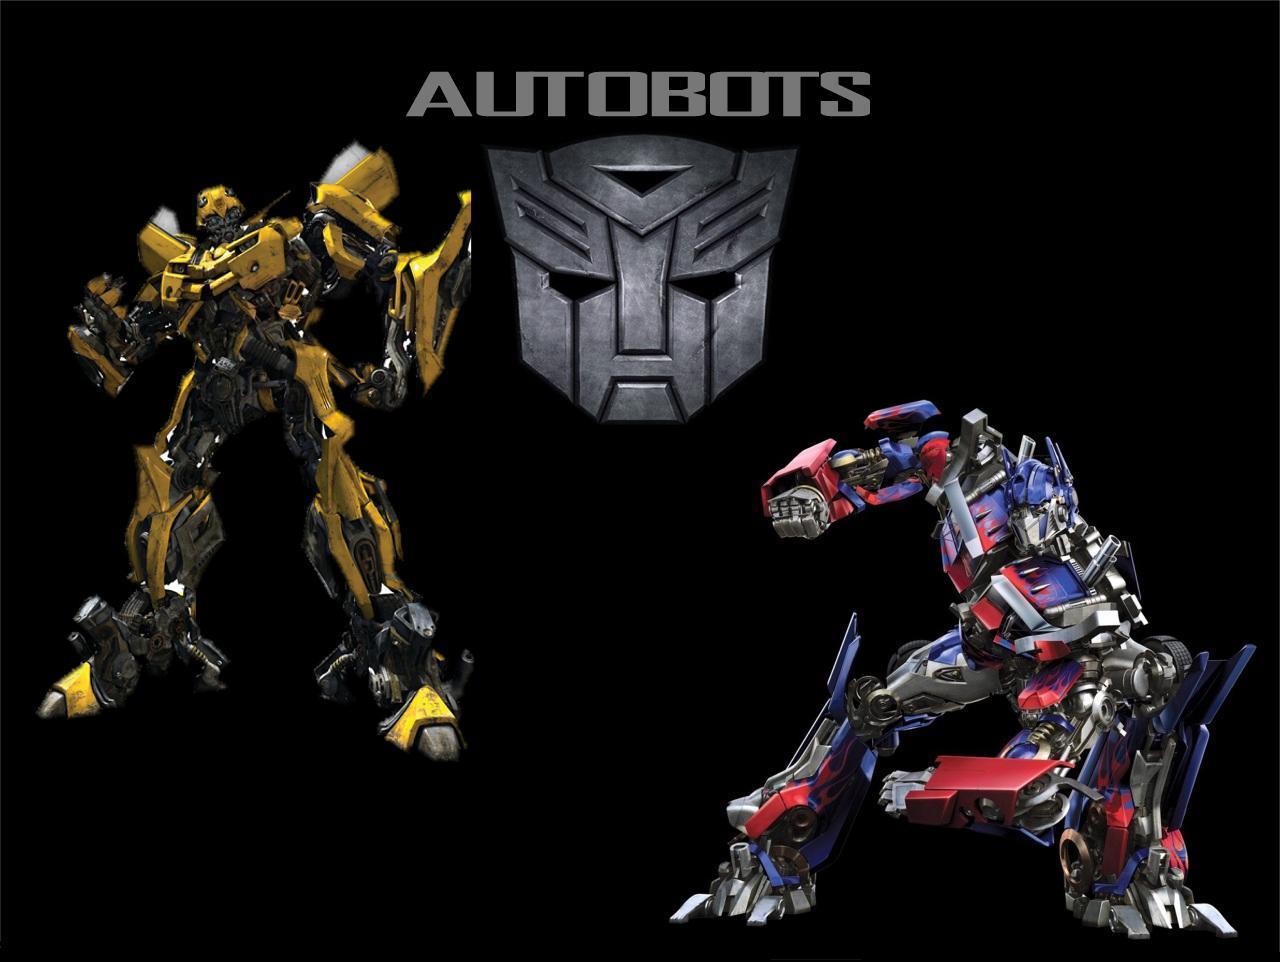 Transformers Autobots Wallpaper. Adorable